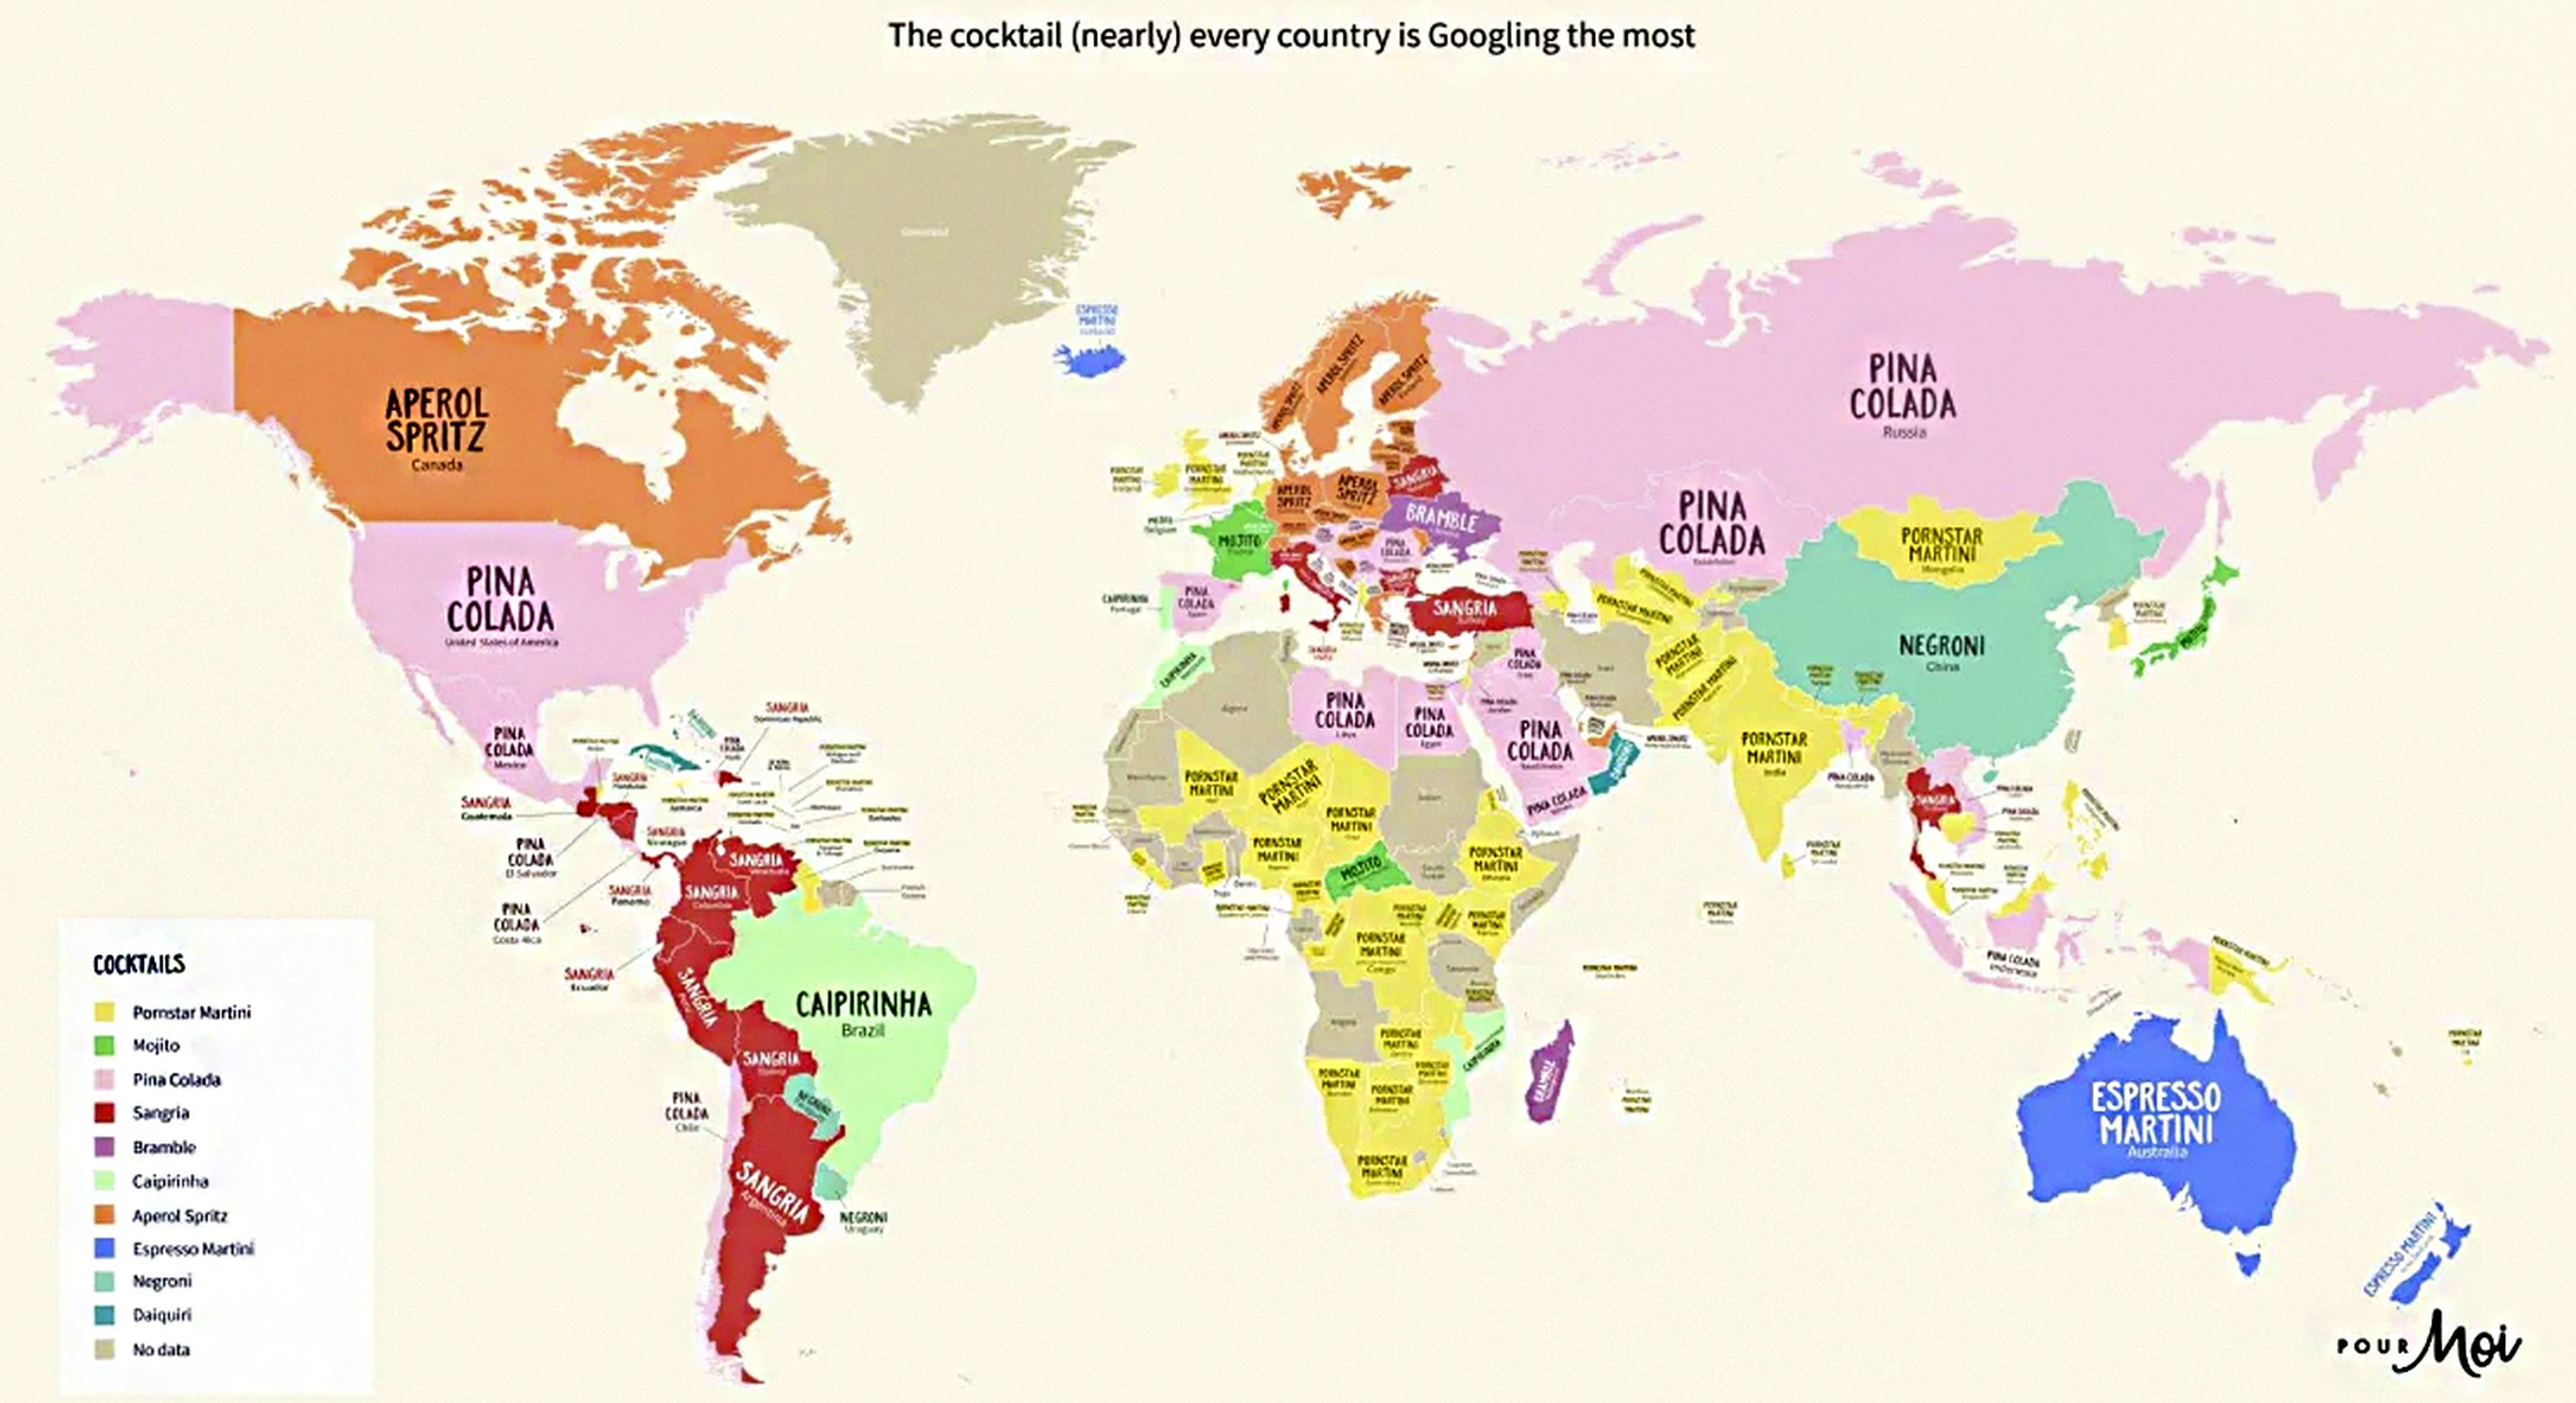 Mapa que muestra el cóctel más popular en cada país